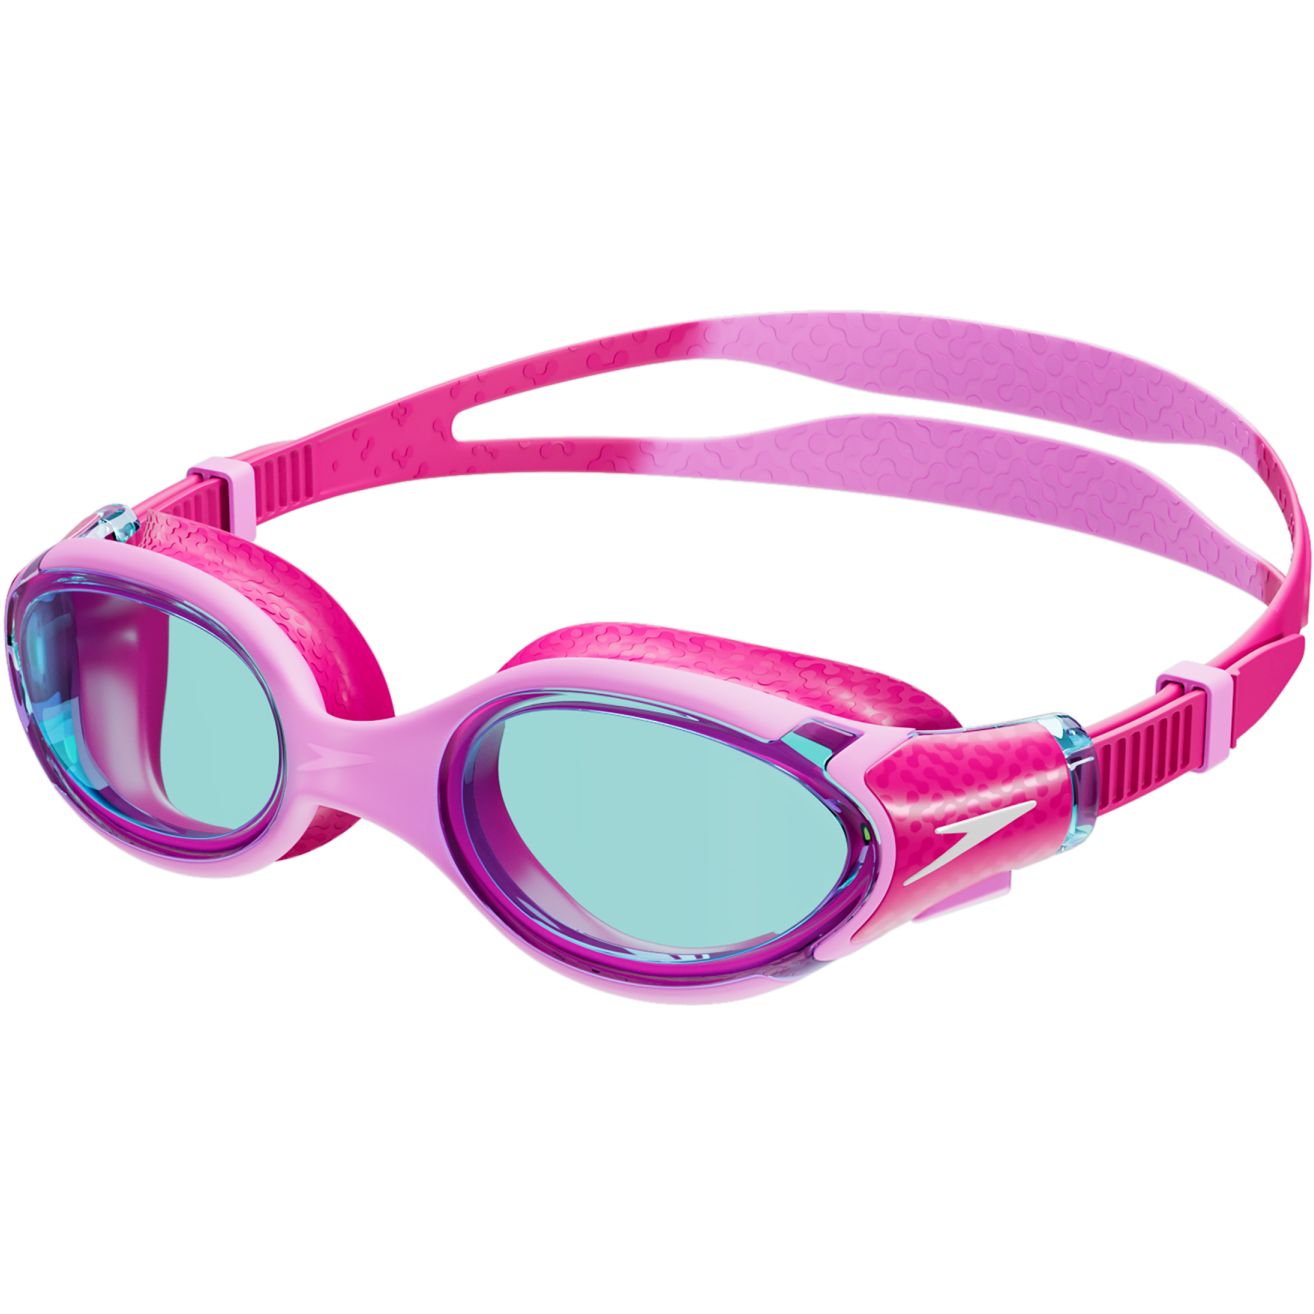 Produktbild von Speedo Biofuse 2.0 Junior Flamingo Pink/Electric Pink/Blue Schwimmbrille